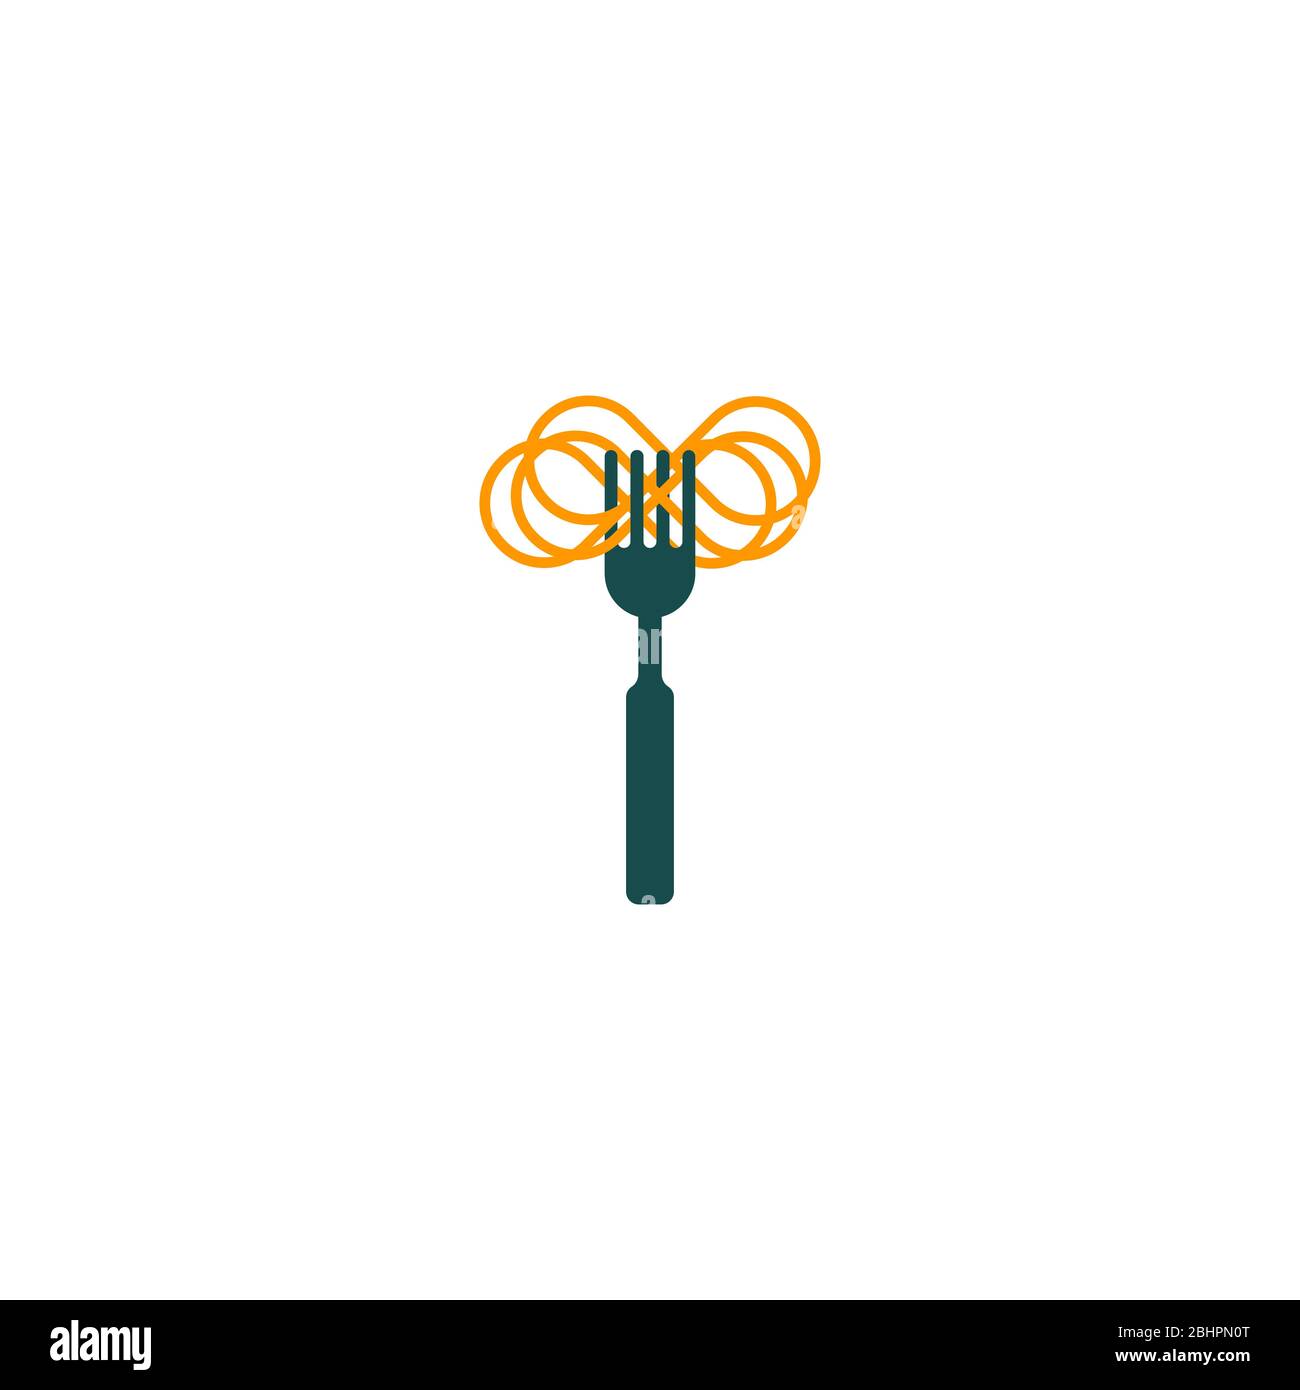 Logo fourche et pâtes minimal, symbole pâtes, cuisine italienne, élément de menu avec spaghetti, symbole vectoriel graphique plat Illustration de Vecteur